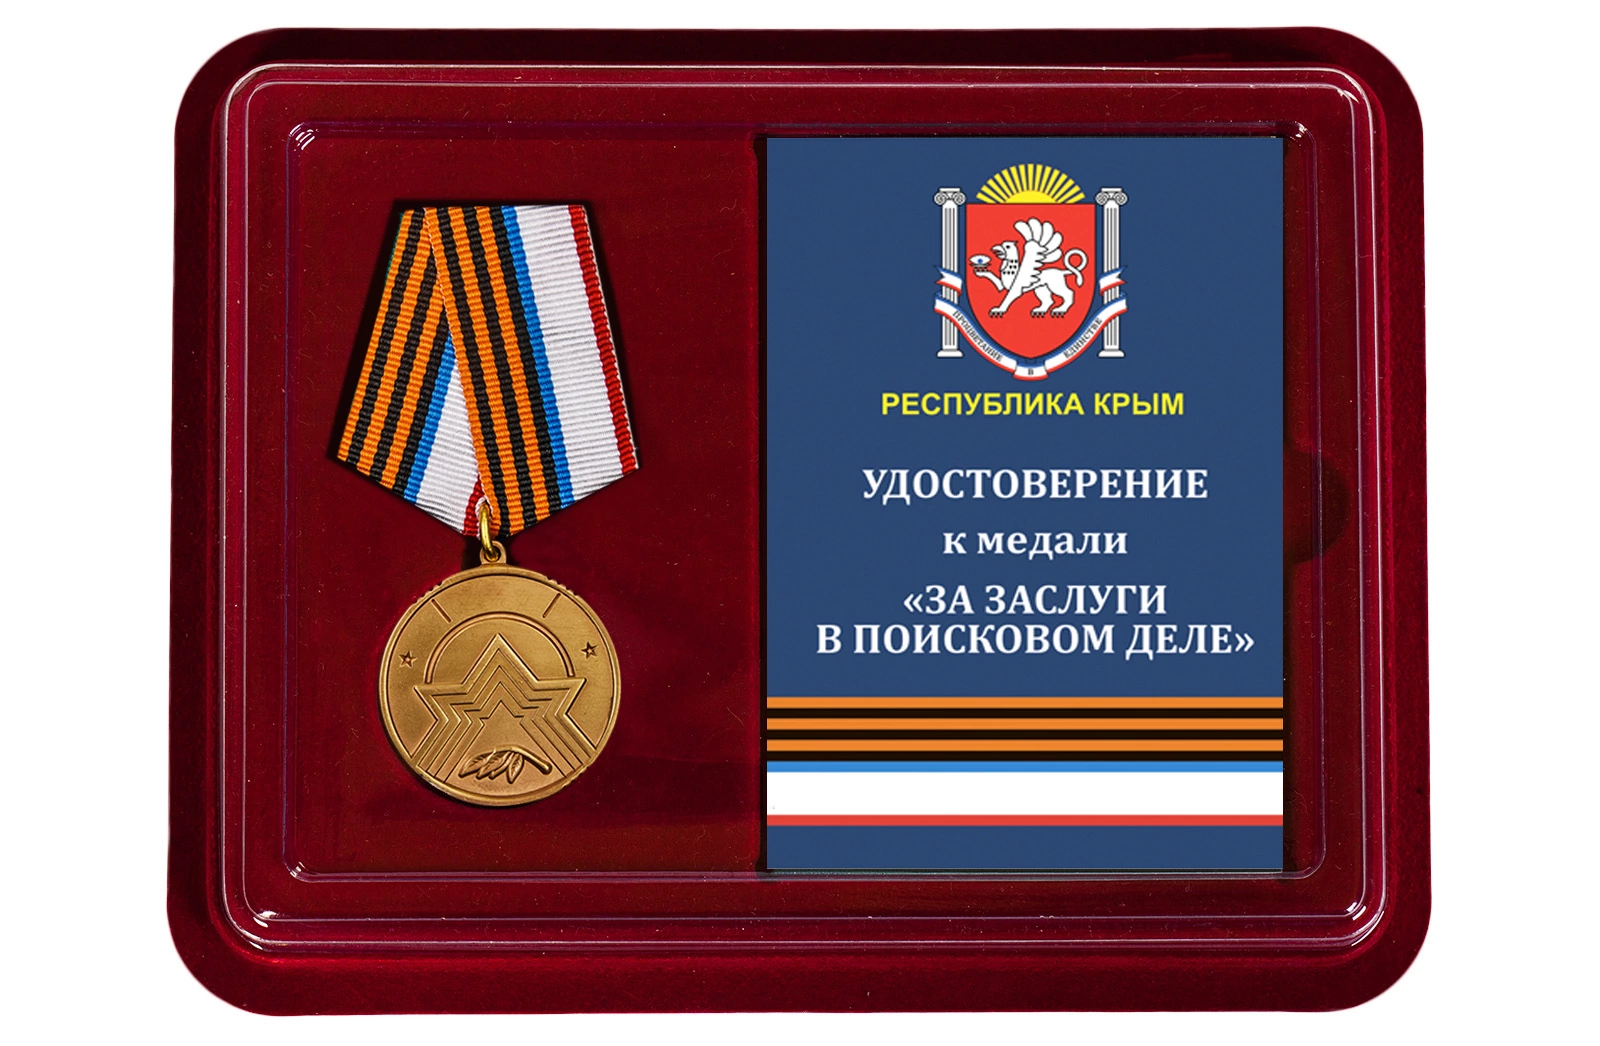 Памятная медаль "За заслуги в поисковом деле" (Республика Крым)